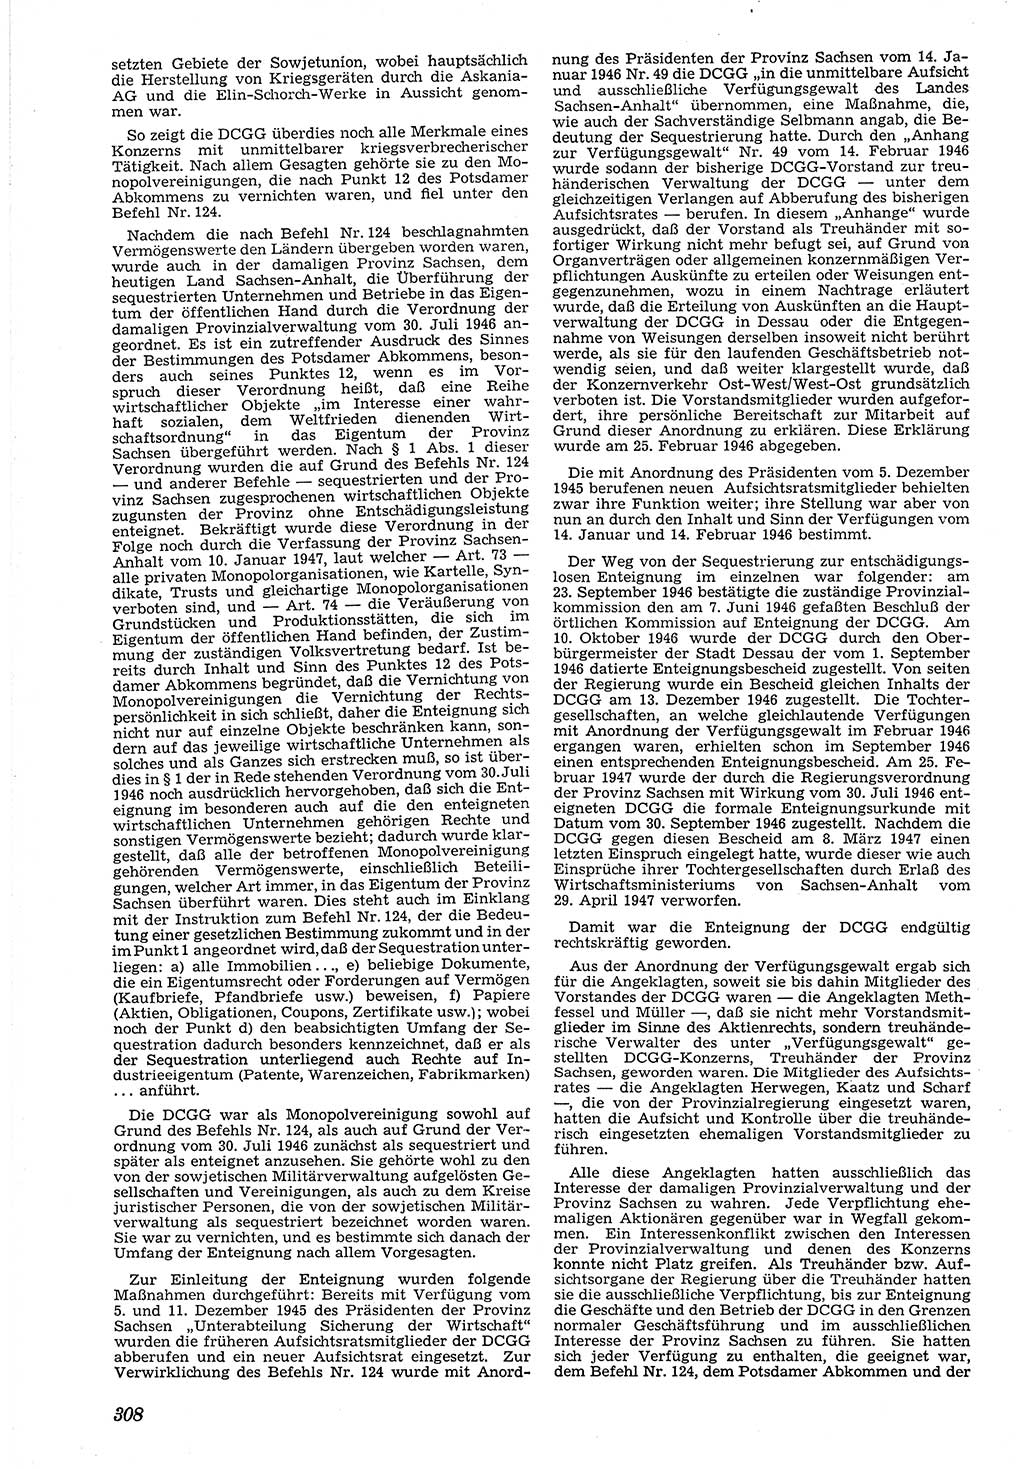 Neue Justiz (NJ), Zeitschrift für Recht und Rechtswissenschaft [Deutsche Demokratische Republik (DDR)], 4. Jahrgang 1950, Seite 308 (NJ DDR 1950, S. 308)